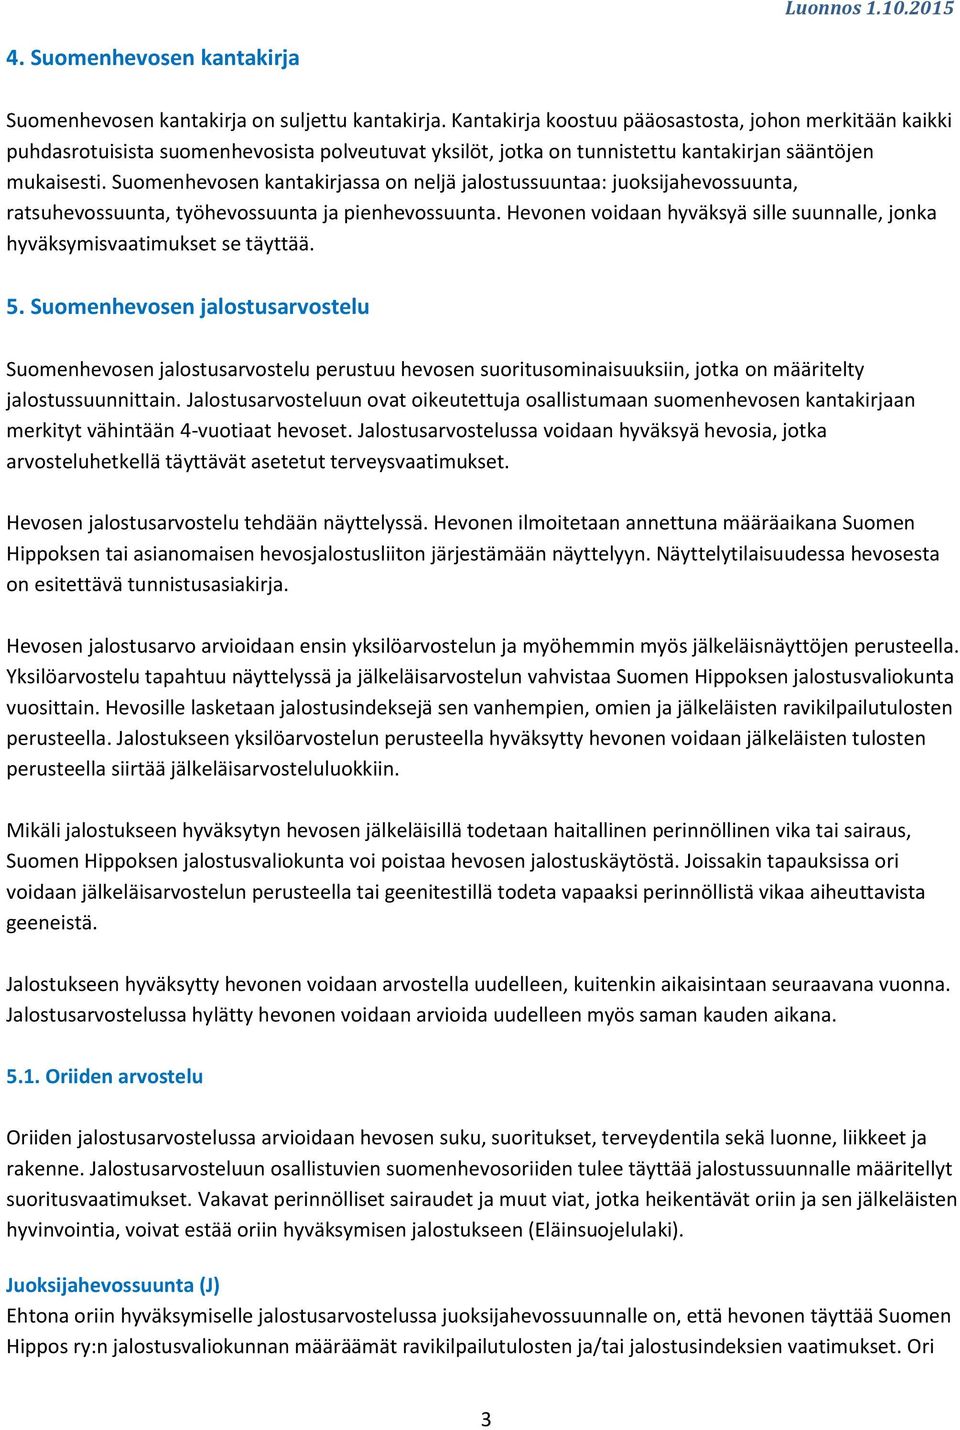 Suomenhevosen kantakirjassa on neljä jalostussuuntaa: juoksijahevossuunta, ratsuhevossuunta, työhevossuunta ja pienhevossuunta.